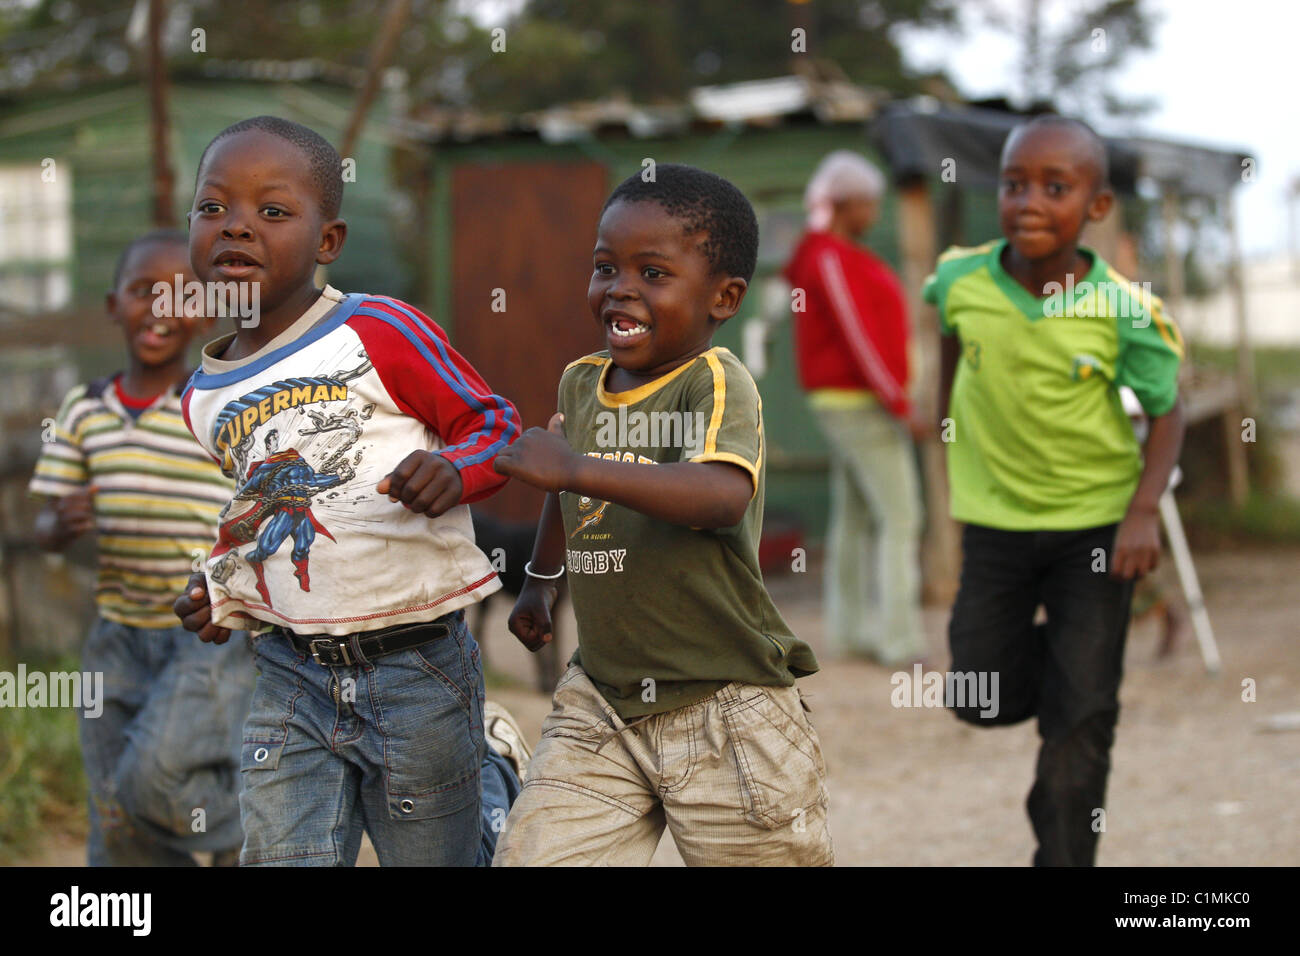 Afrikanische jungen laufen IN SPRINGBOK Hemd KWANOKUTHULA TOWNSHIP in Südafrika 5. Juli 2011 Stockfoto